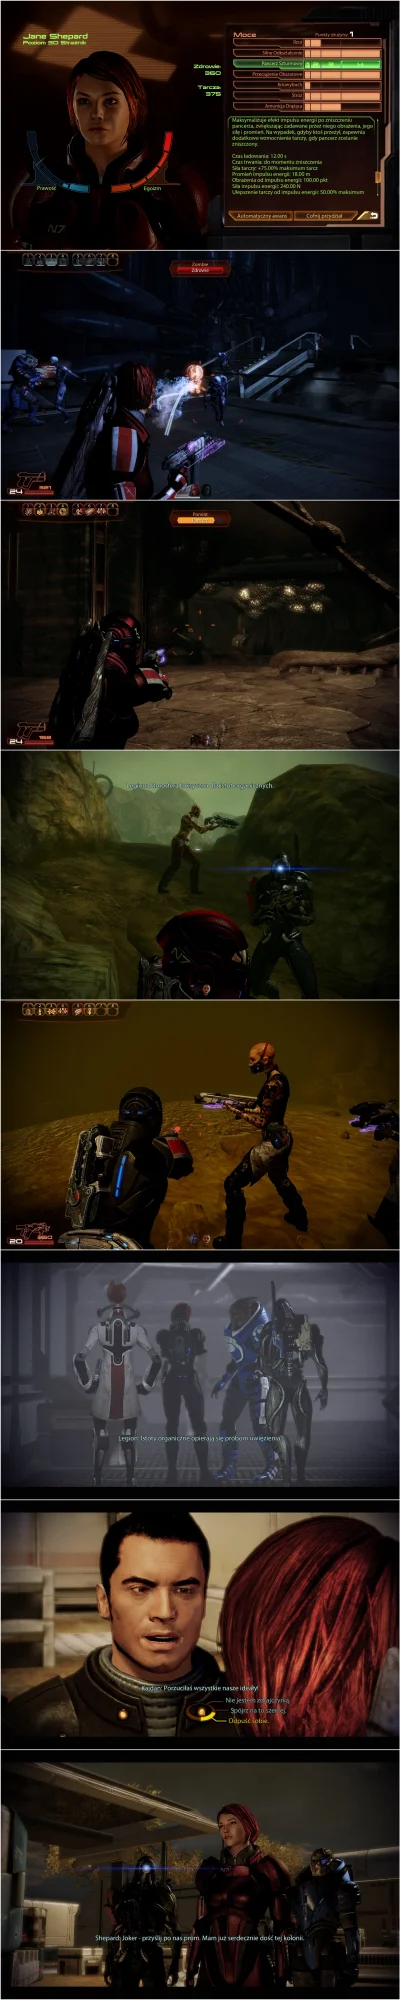 Lisaros - Mass Effect 2 

Część 2/3


Technikalia, czyli ekwipunek, rozwój posta...